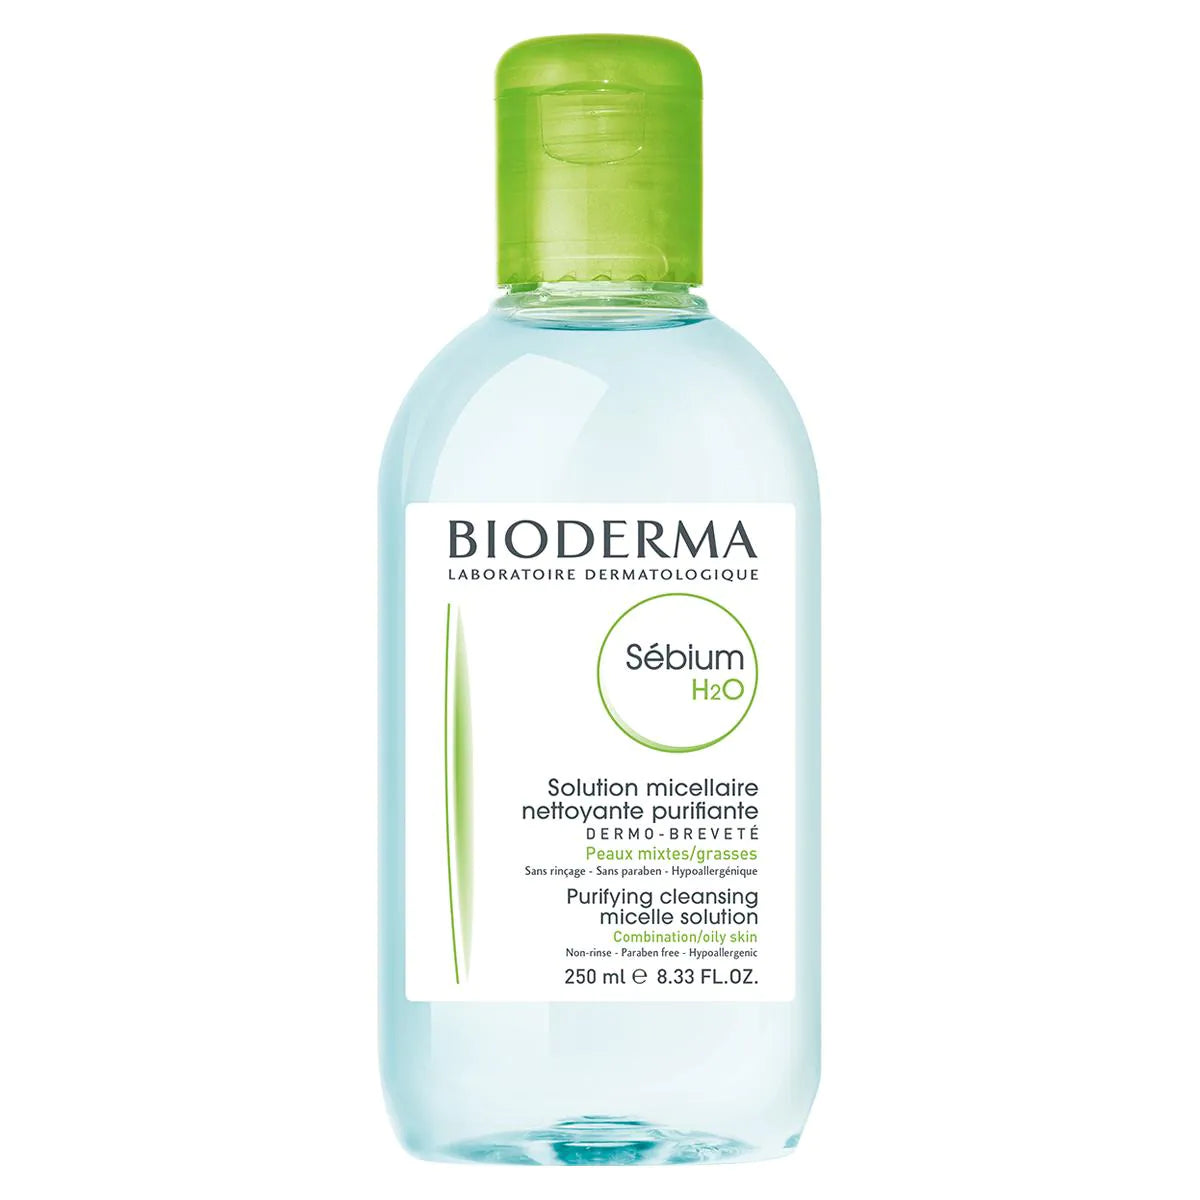 Bioderma Sébium H2O Agua Micelar (250ml) – Dermatology Point